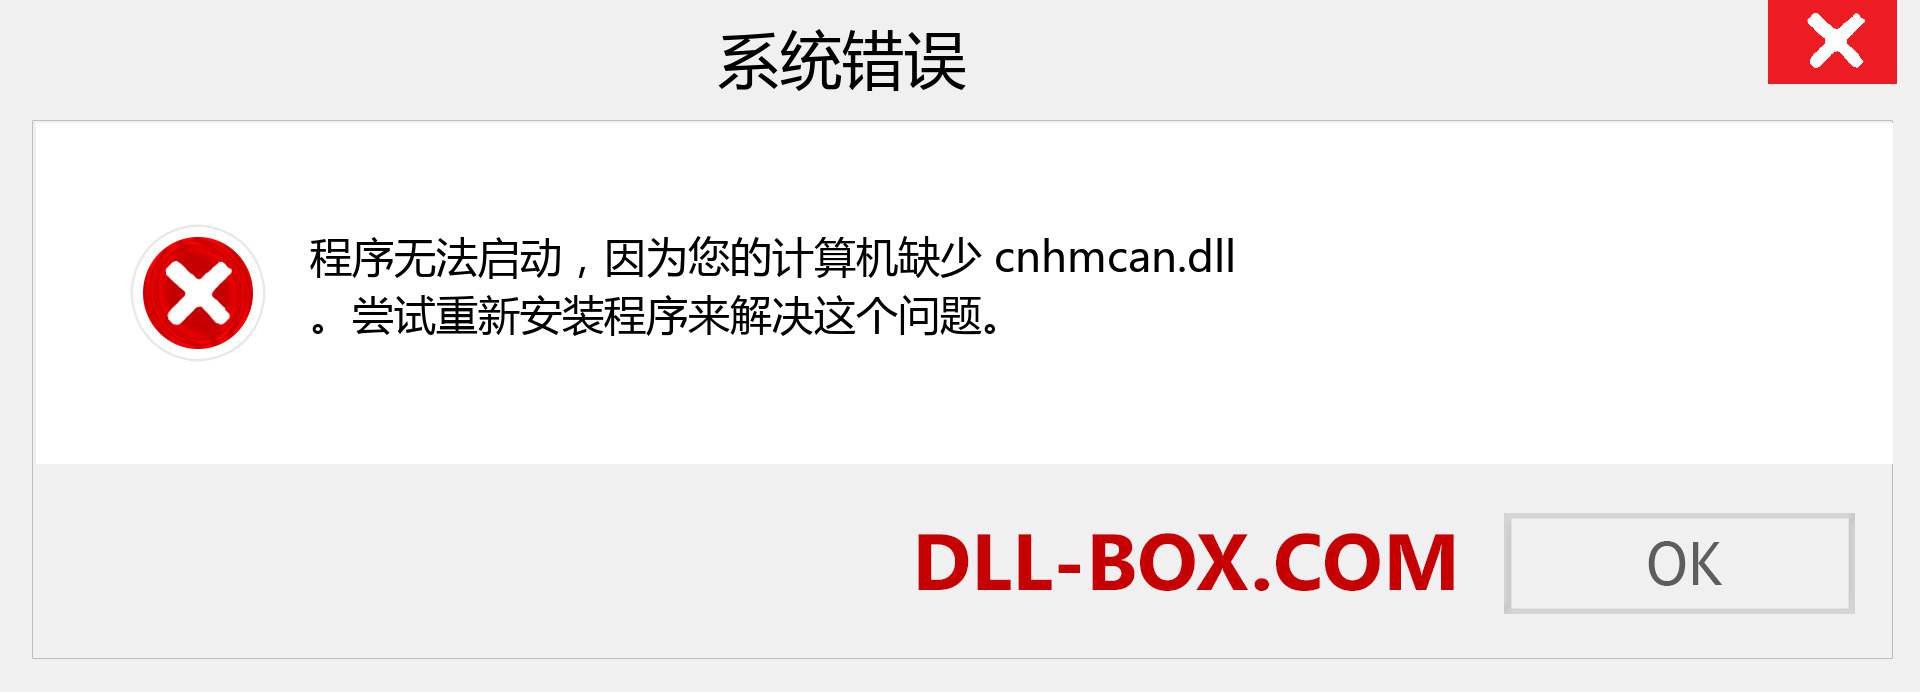 cnhmcan.dll 文件丢失？。 适用于 Windows 7、8、10 的下载 - 修复 Windows、照片、图像上的 cnhmcan dll 丢失错误